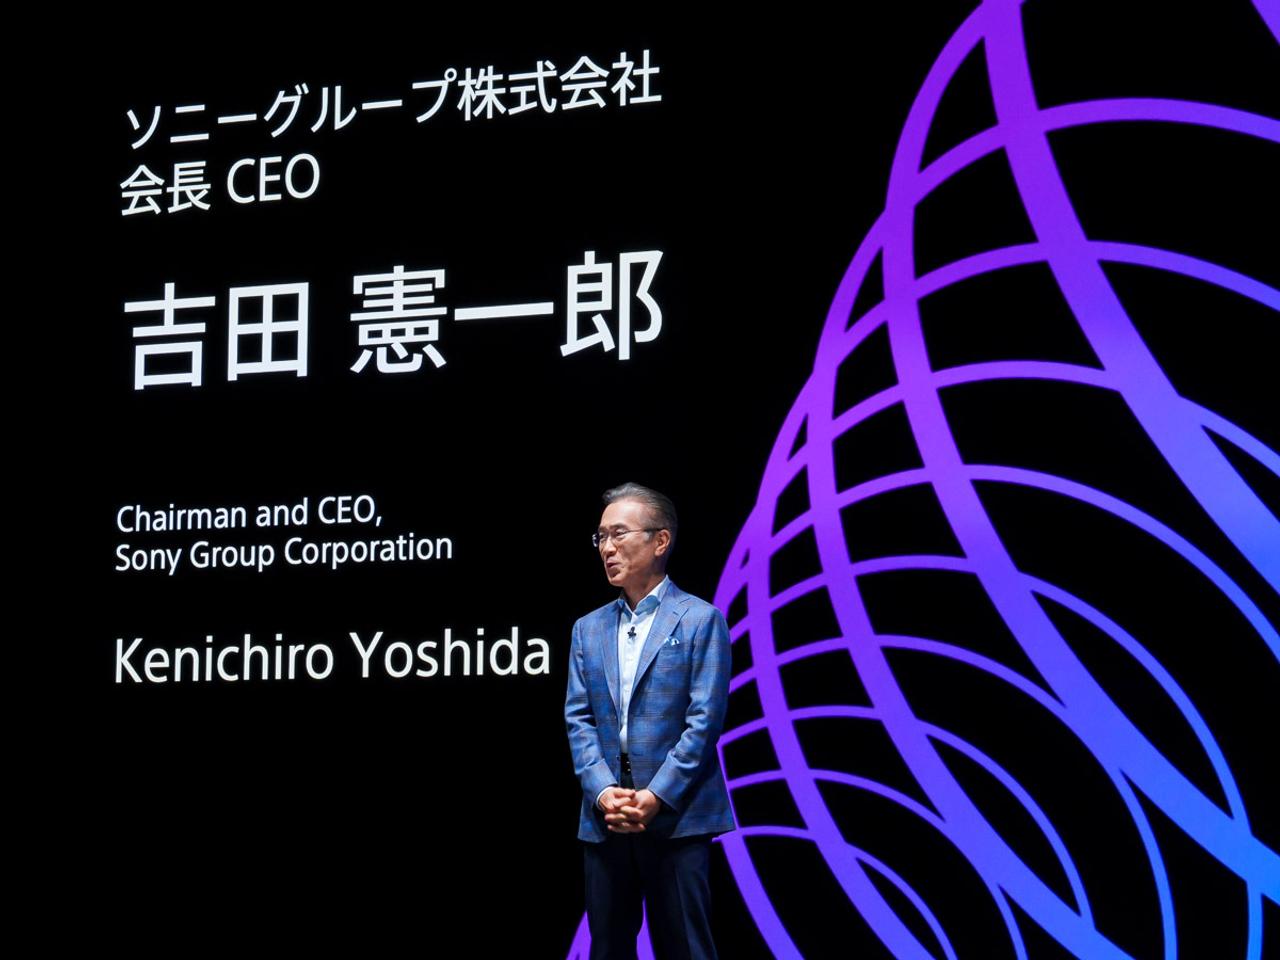 Chairman Yoshida